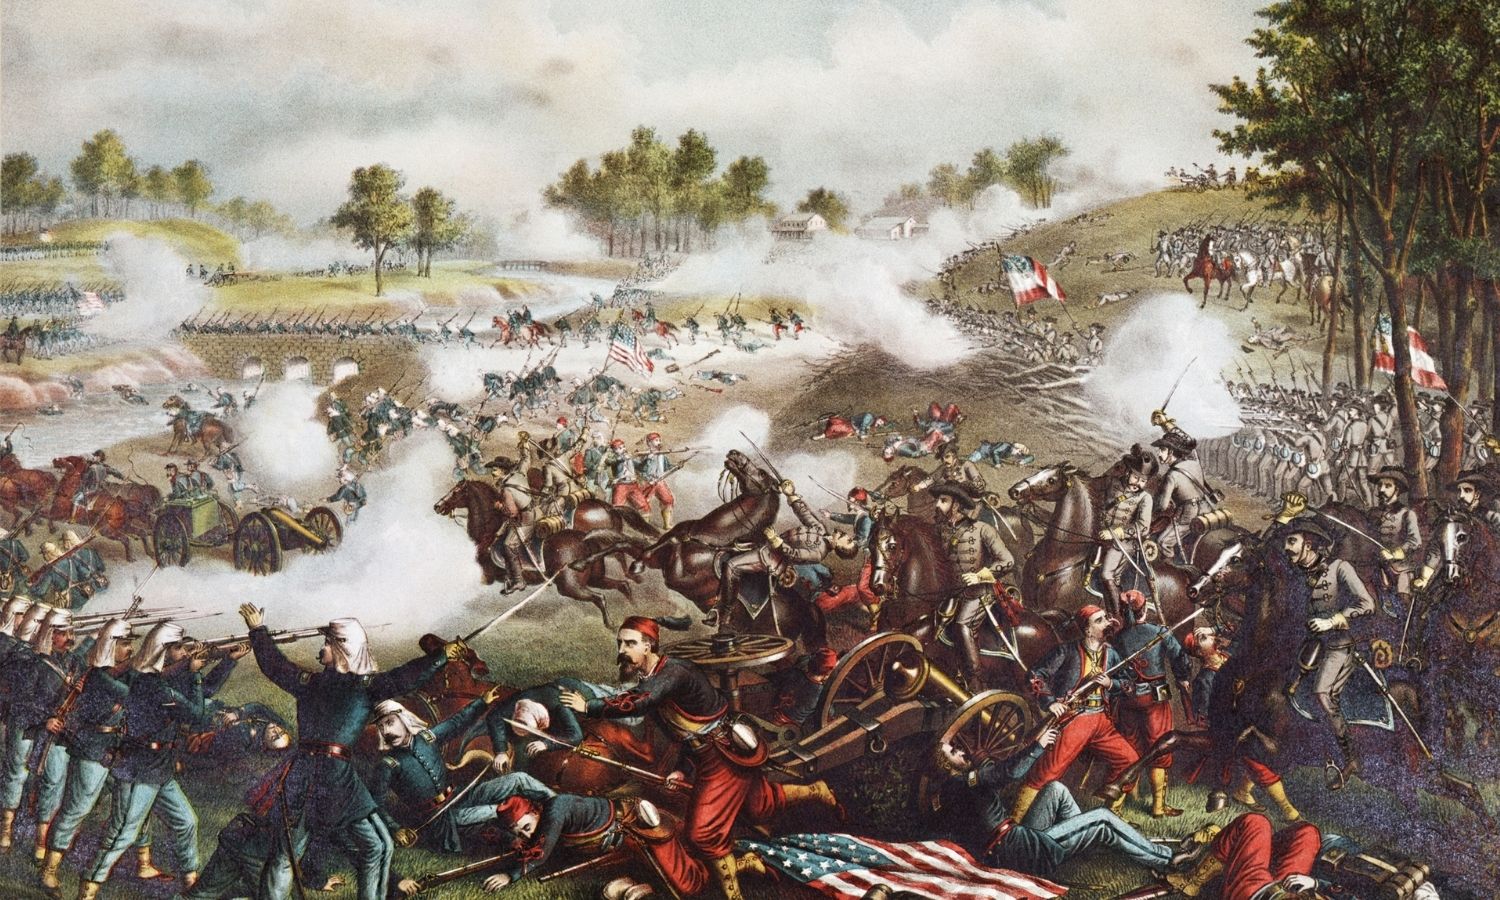 OTD in 1861: The Battle of Bull Run took place at Manassas Junction